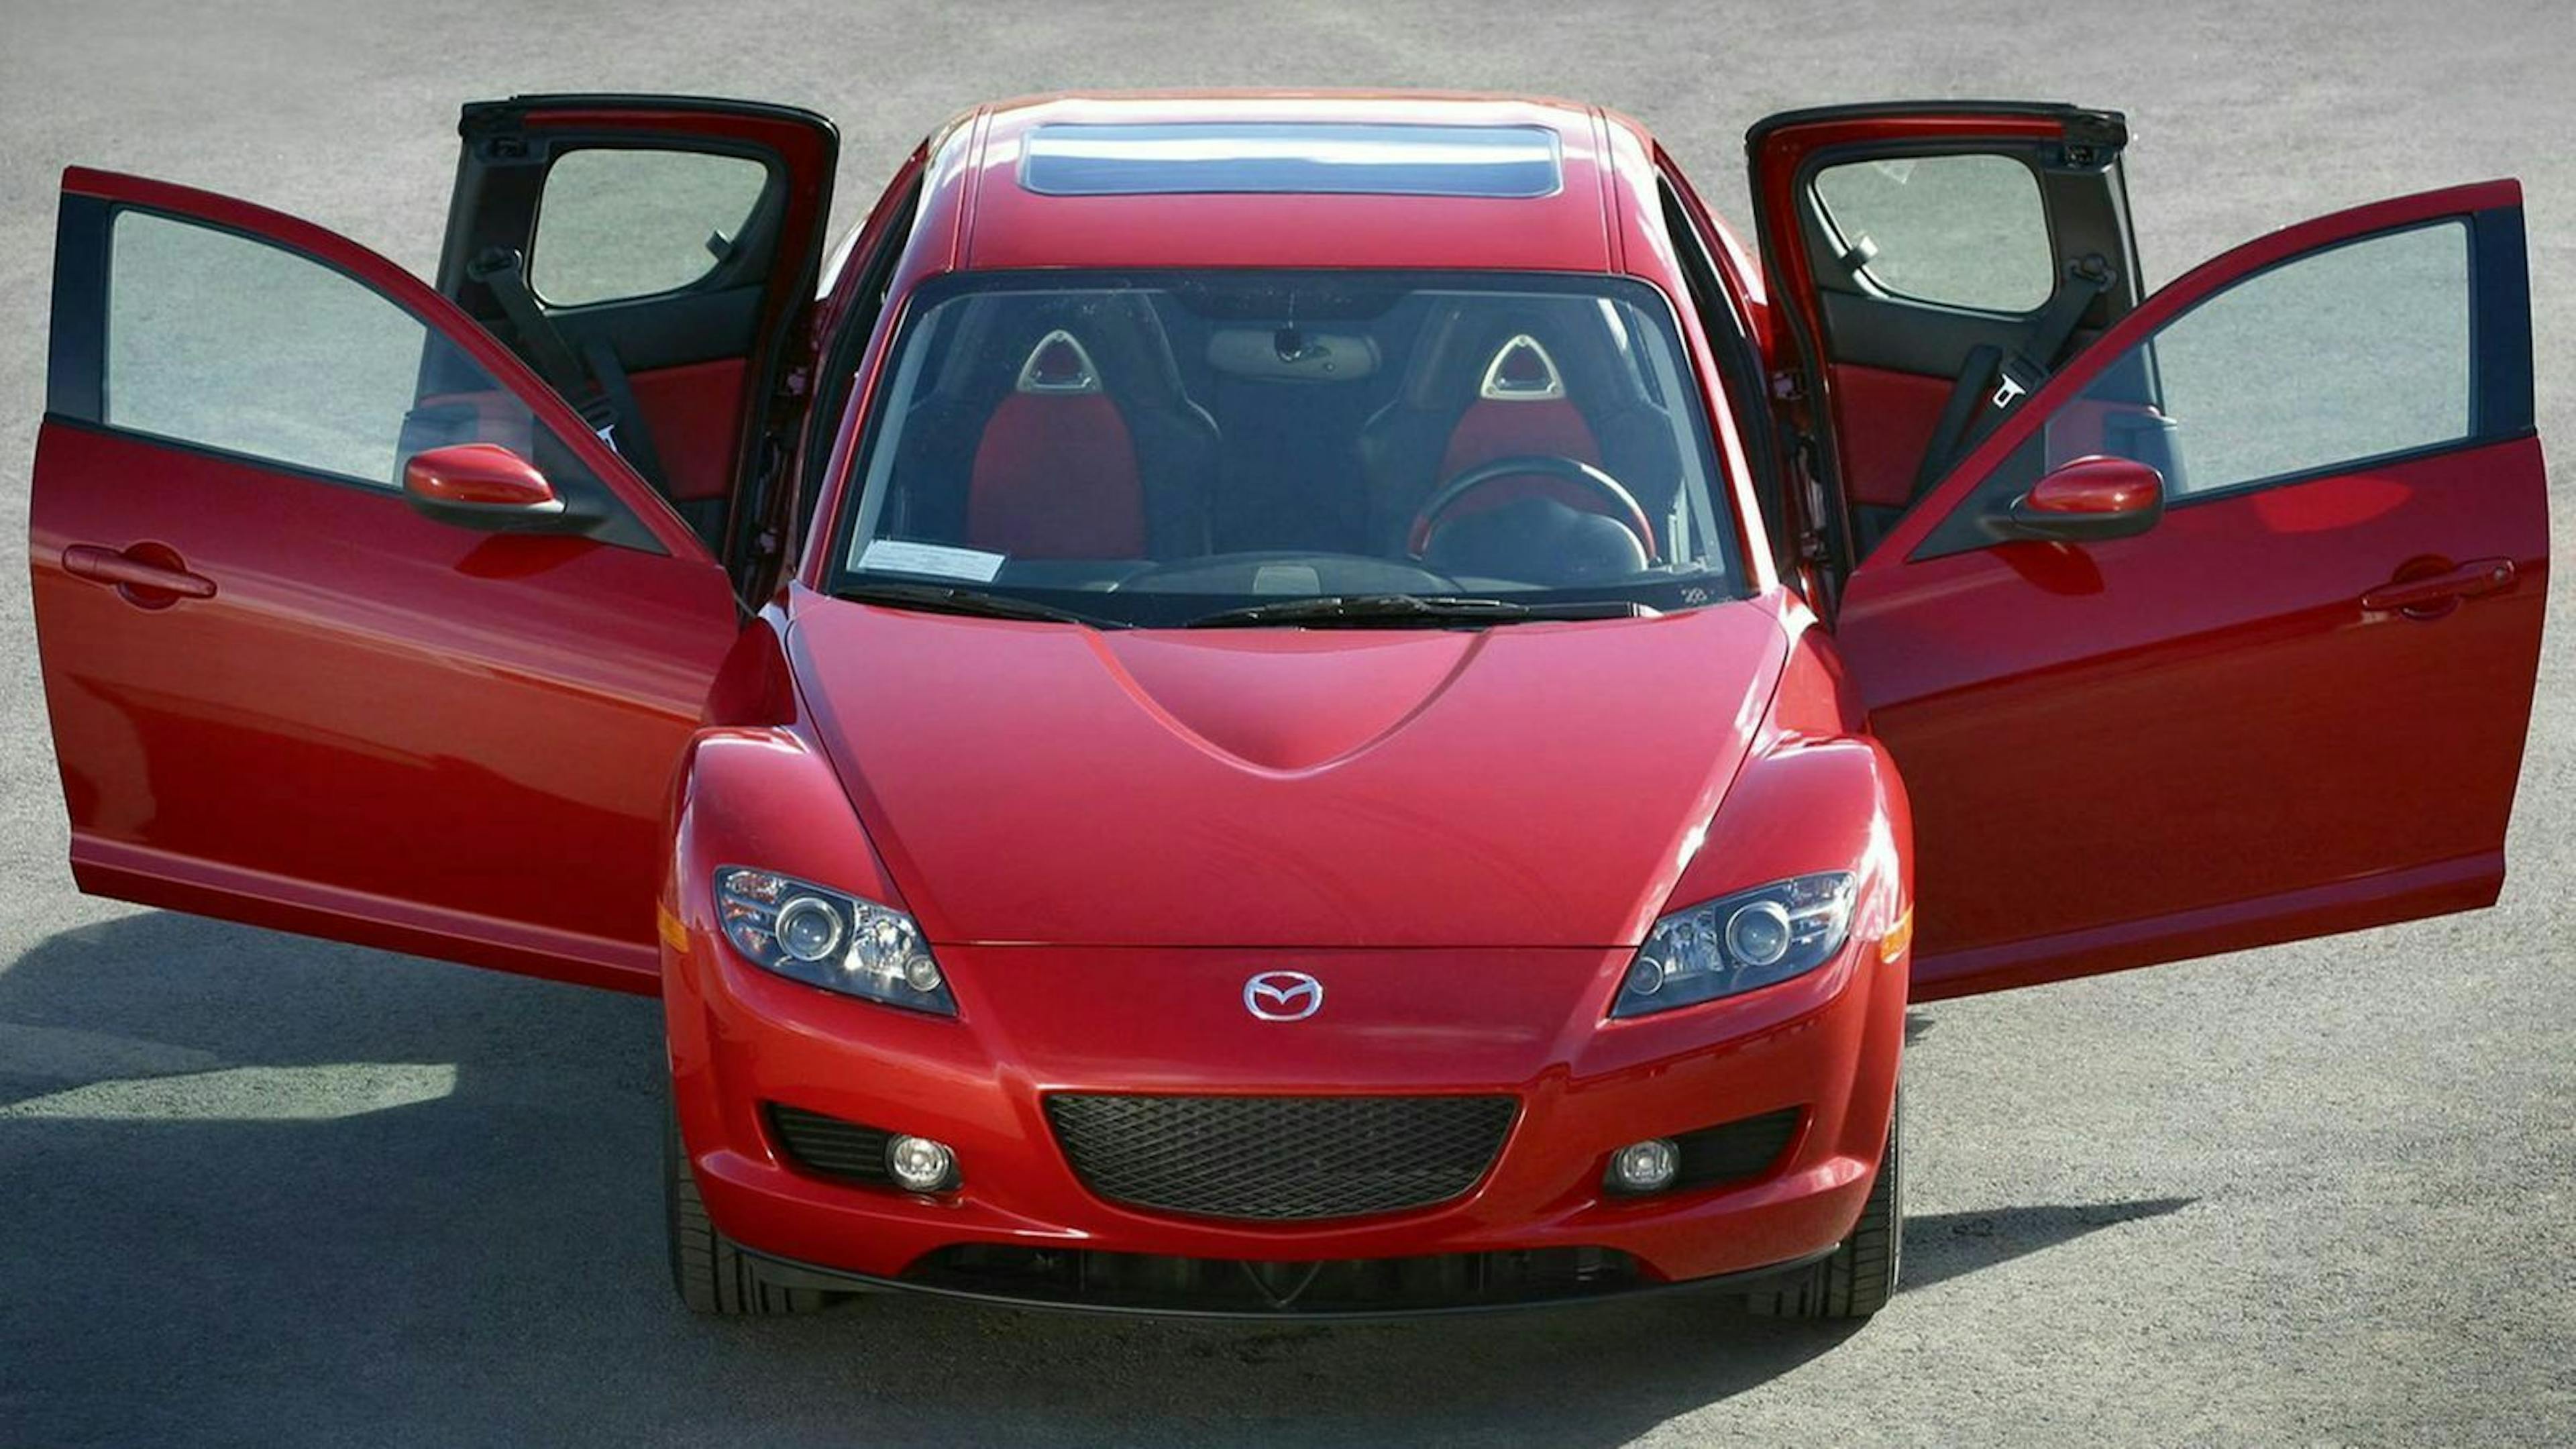 Mazda RX-8 in Frontansicht mit offenen Türen